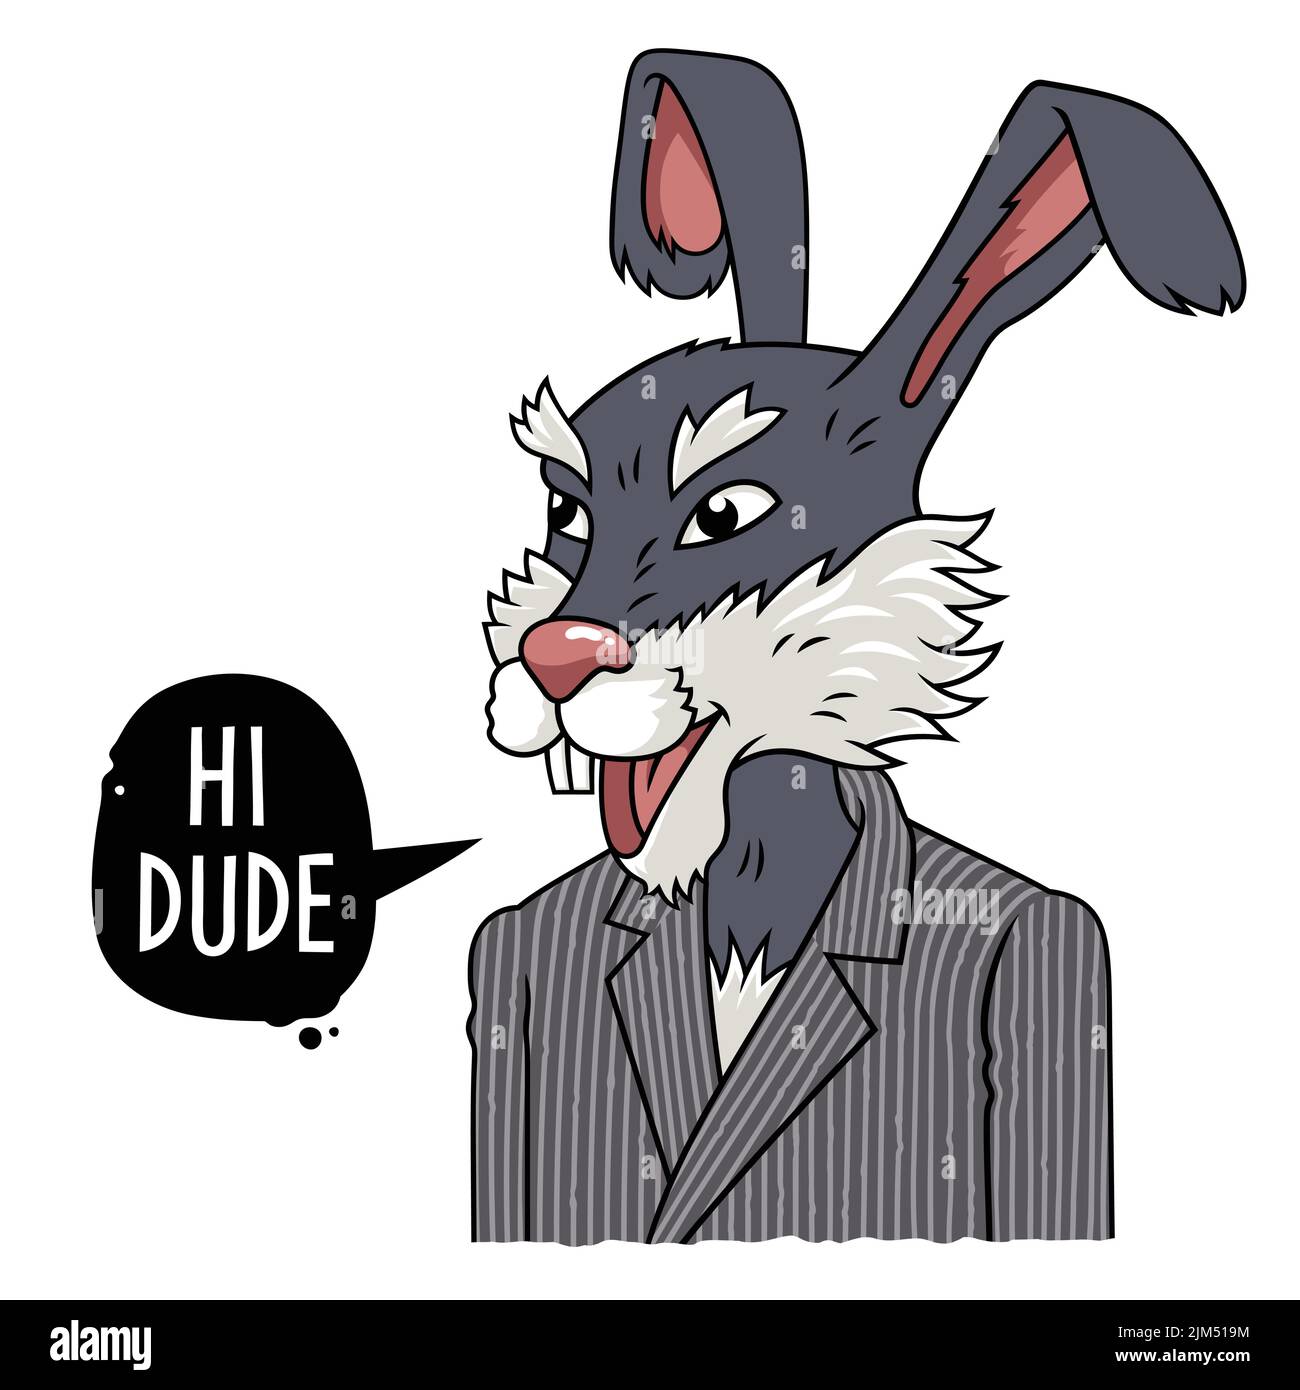 Illustration vectorielle d'un lapin dans une combinaison classique et bulle de la parole avec l'expression Hi dude Illustration de Vecteur